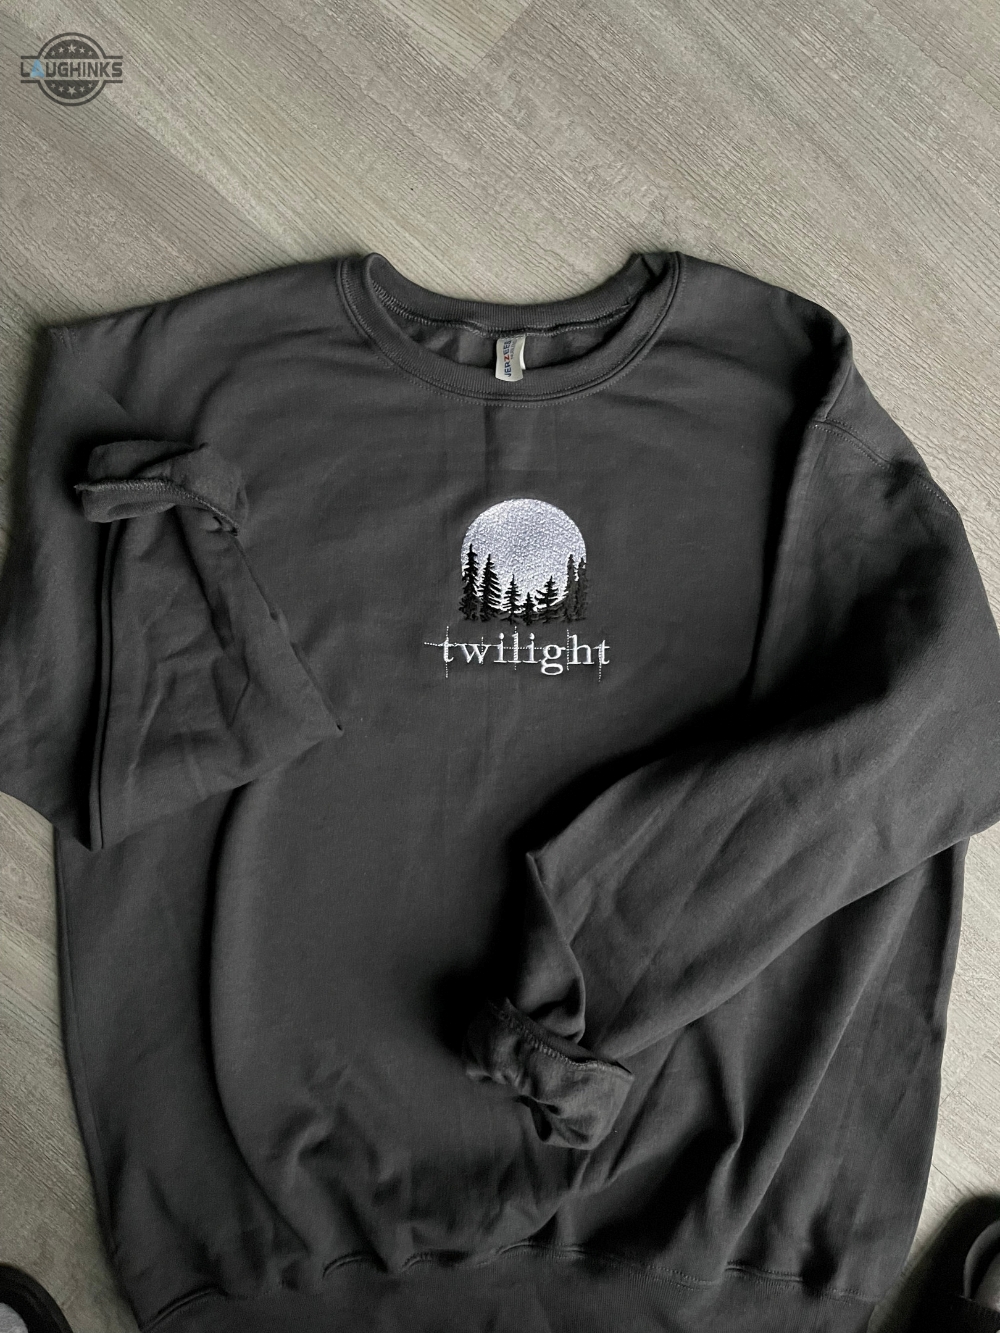 Twilight Embroidered Sweatshirt Embroidery Tshirt Sweatshirt Hoodie Gift